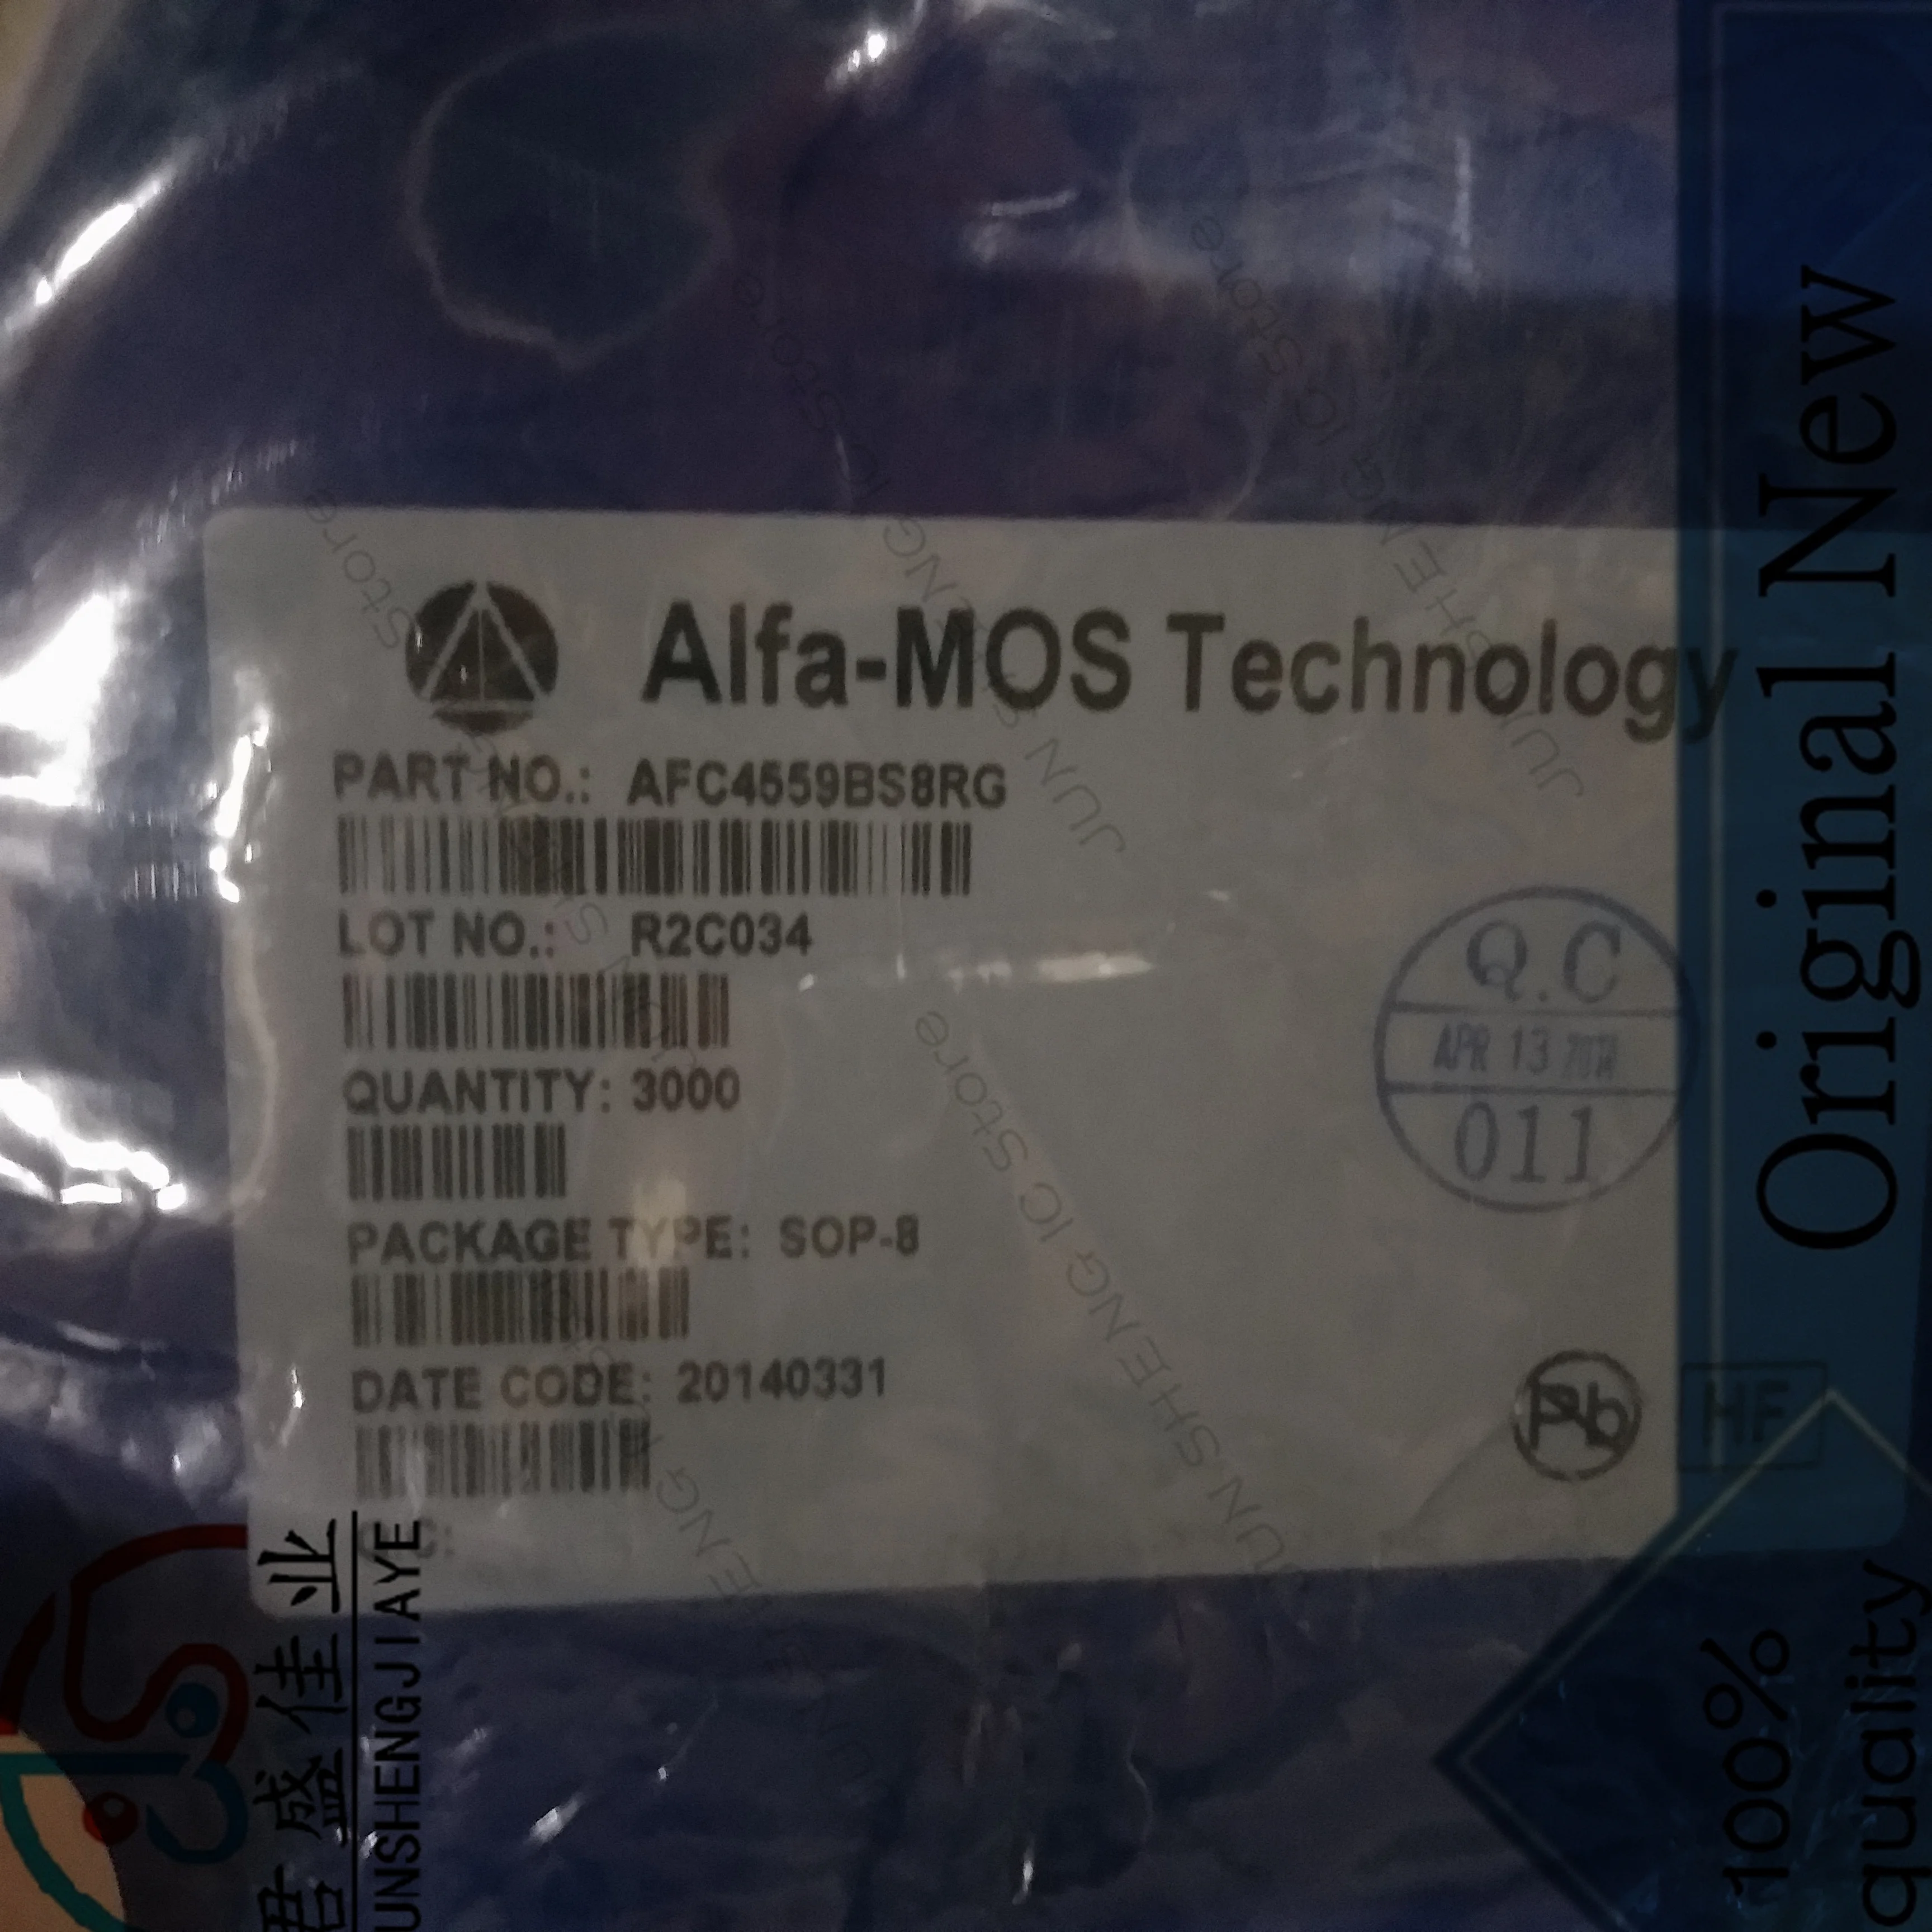 

JUN SHENG IC Store/10 шт./лот 100% Новый оригинальный AFC4559BS8RG оригинальная пятна ALFA-MOS от производителя SOP-8 packag